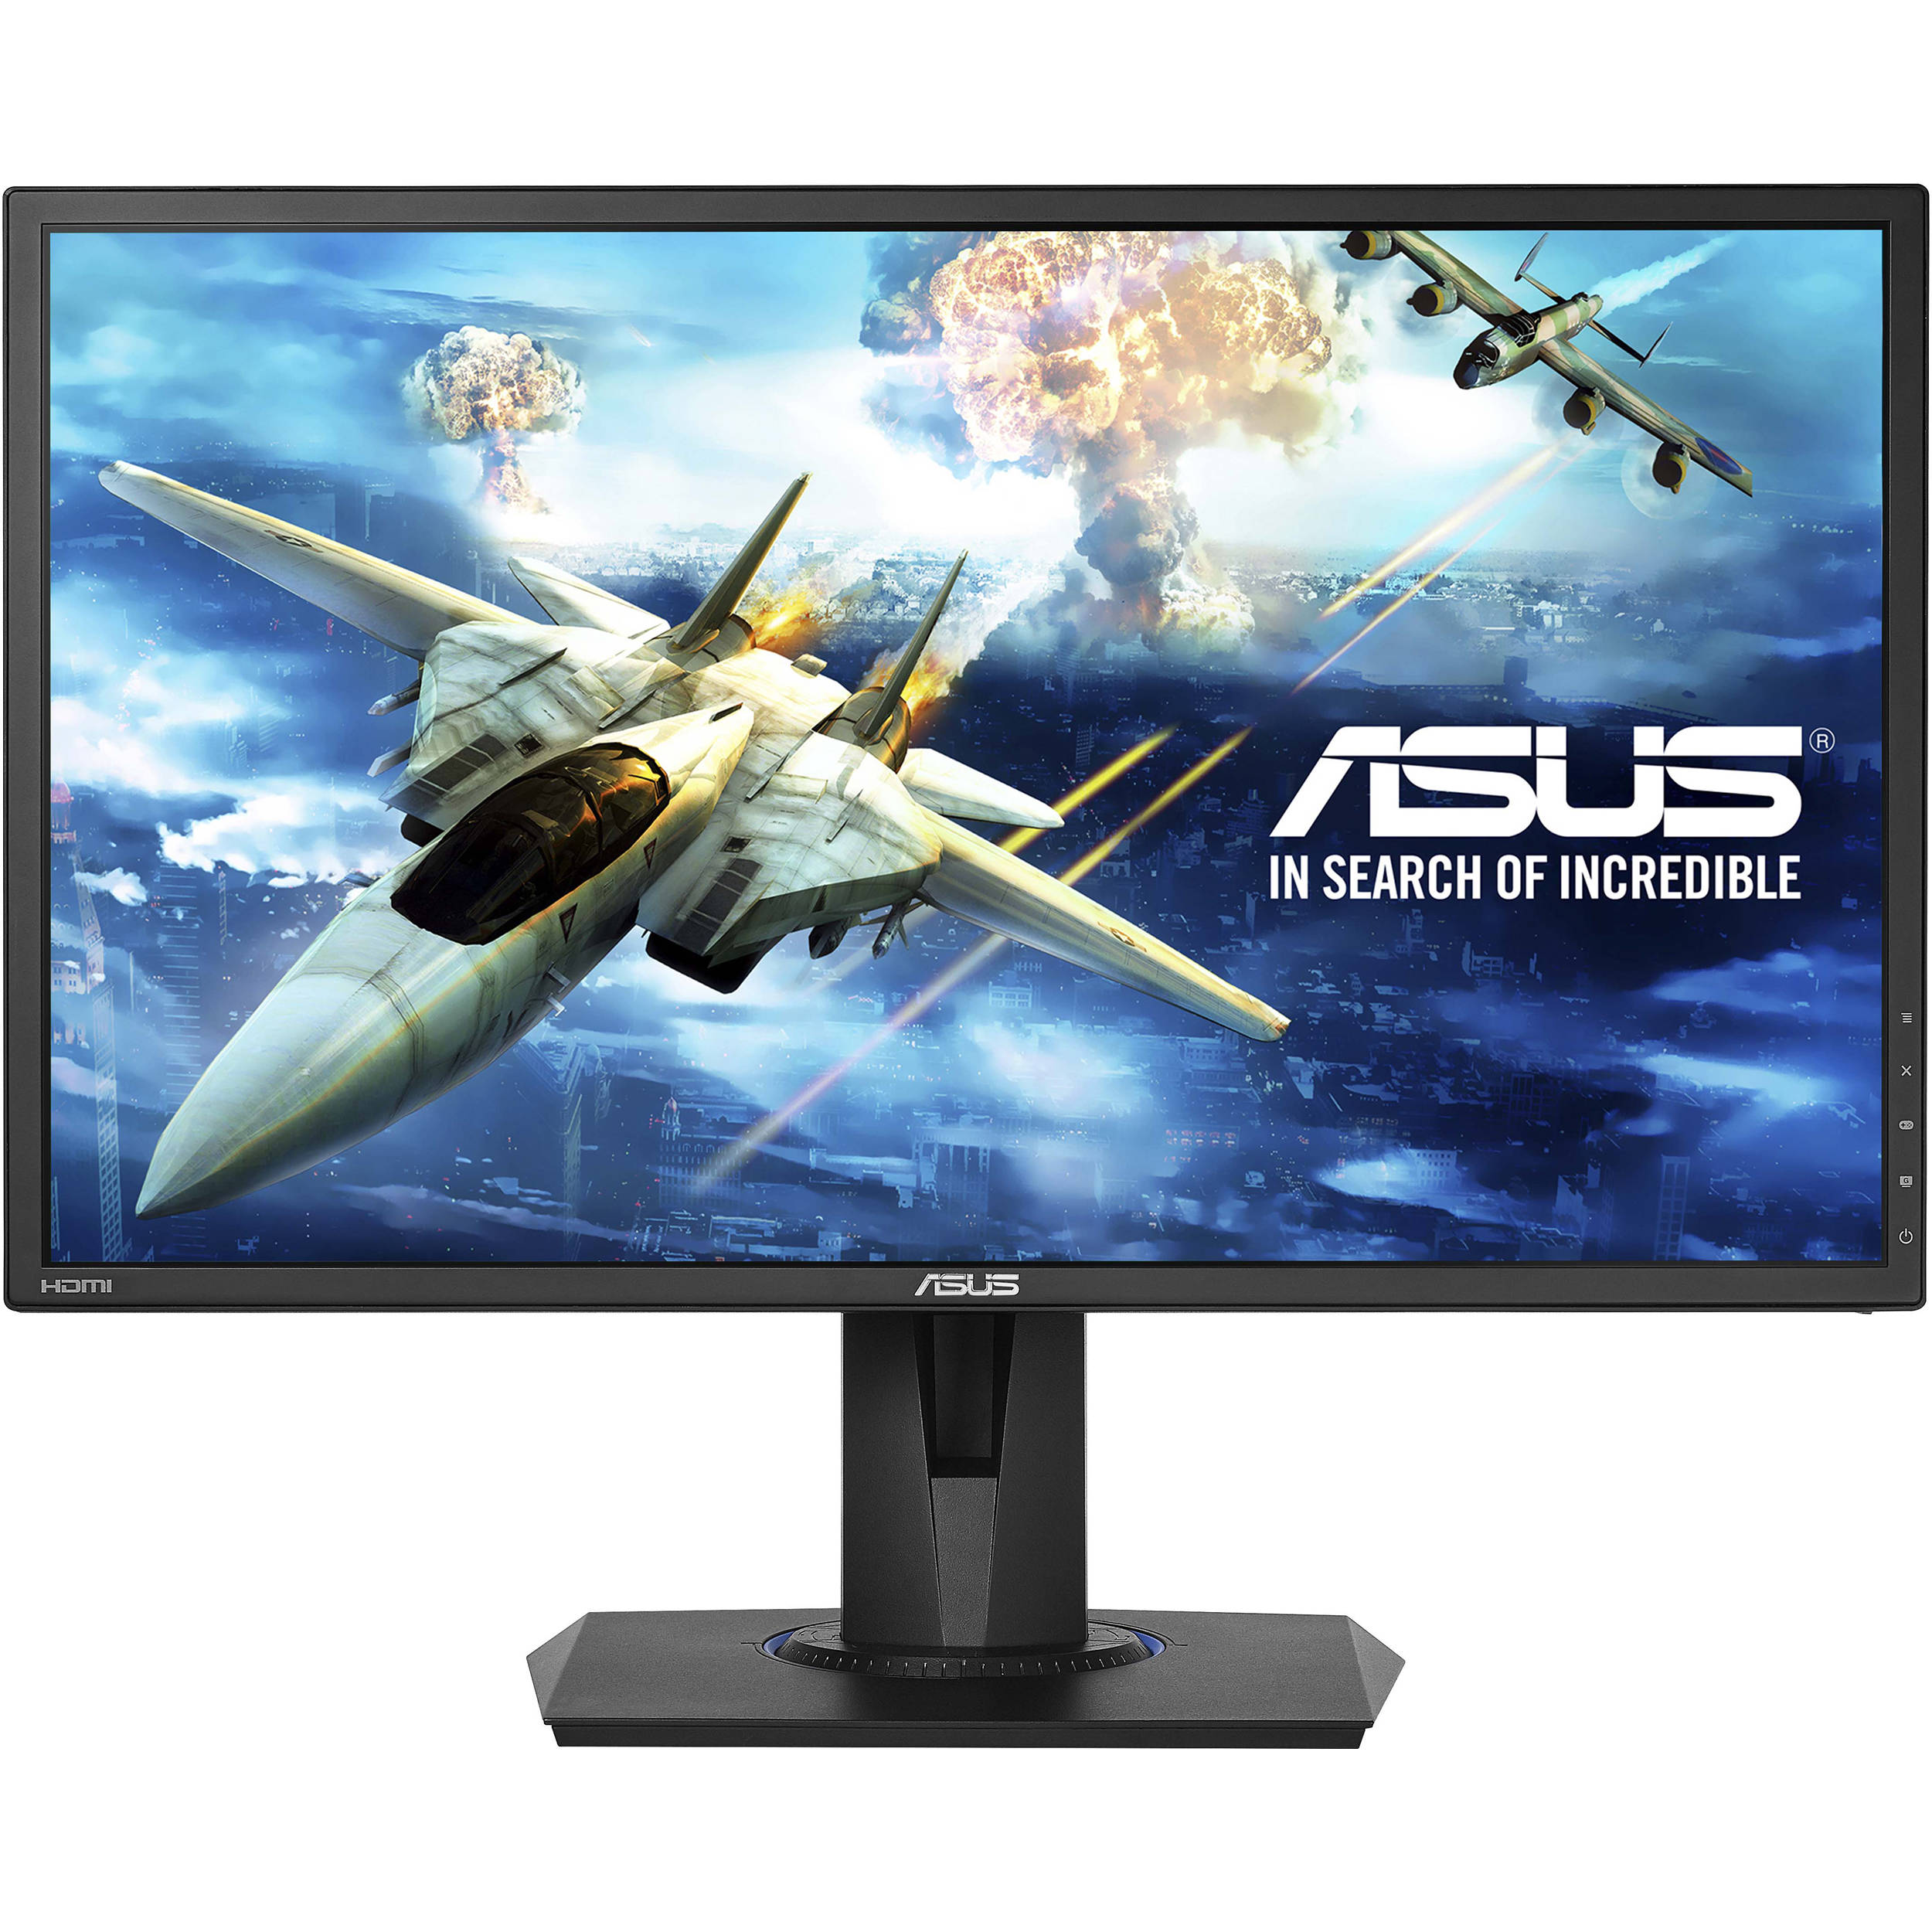 Asus 24 VG245H LCD 1 ms pivot monitor